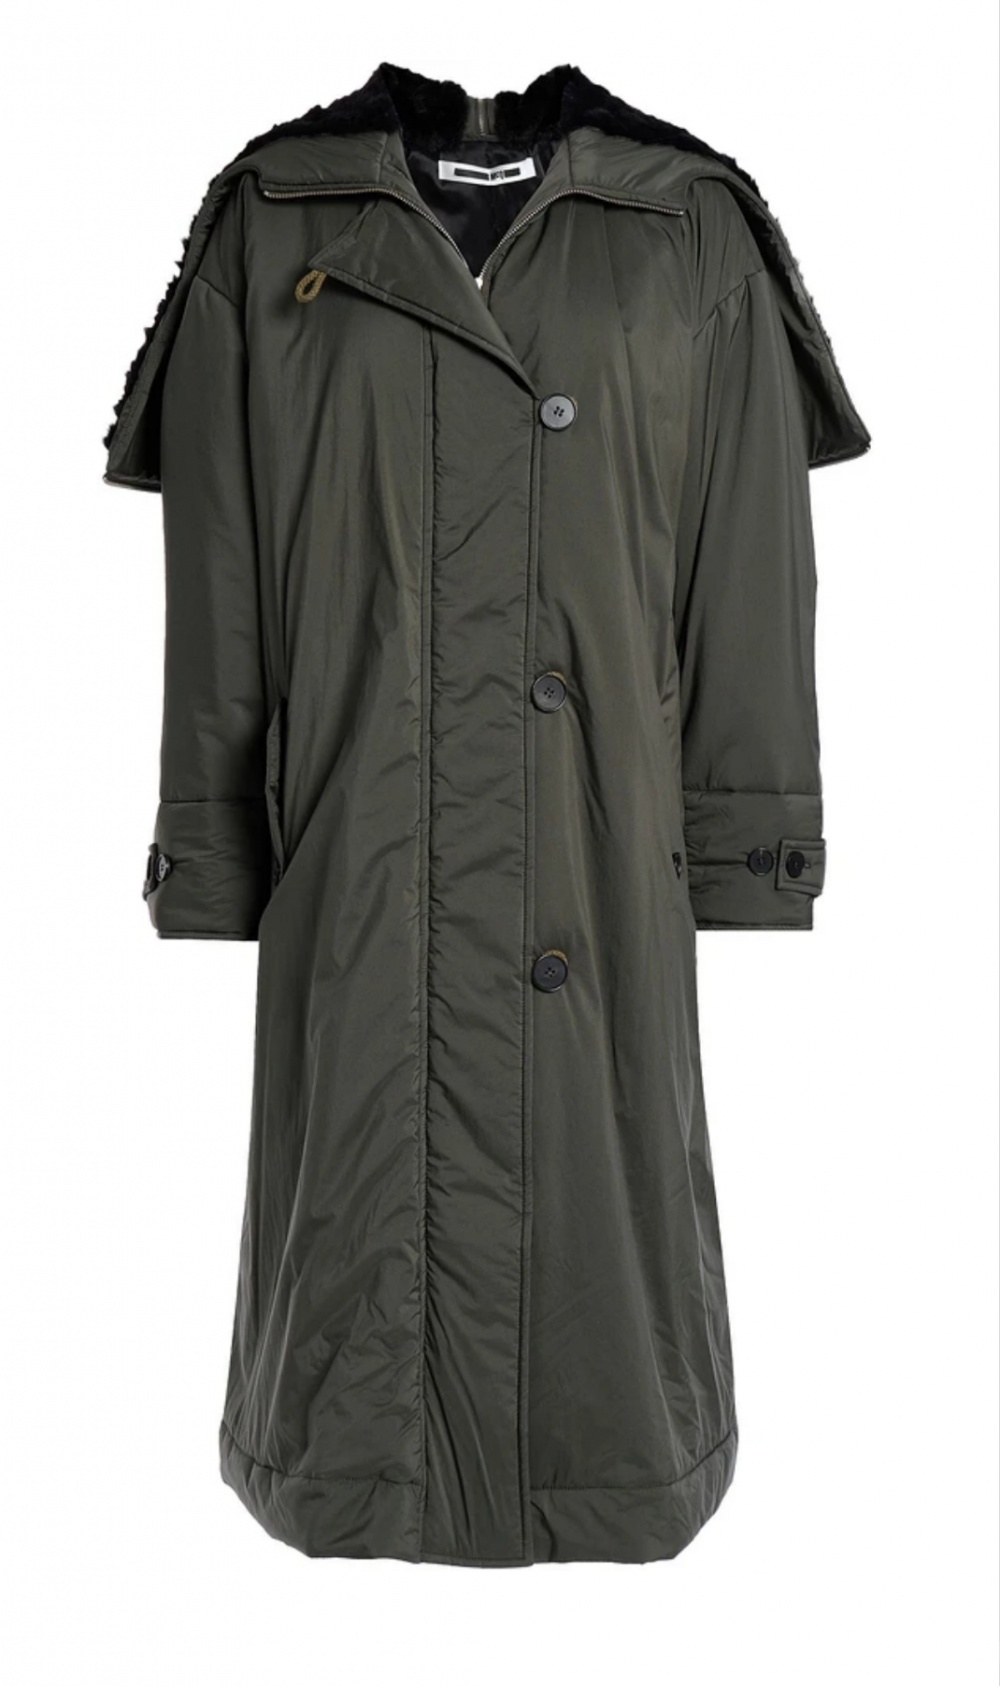 Пуховик, пуховое пальто McQ Alexander McQueen, размер 48 IT, 50-52 рос.